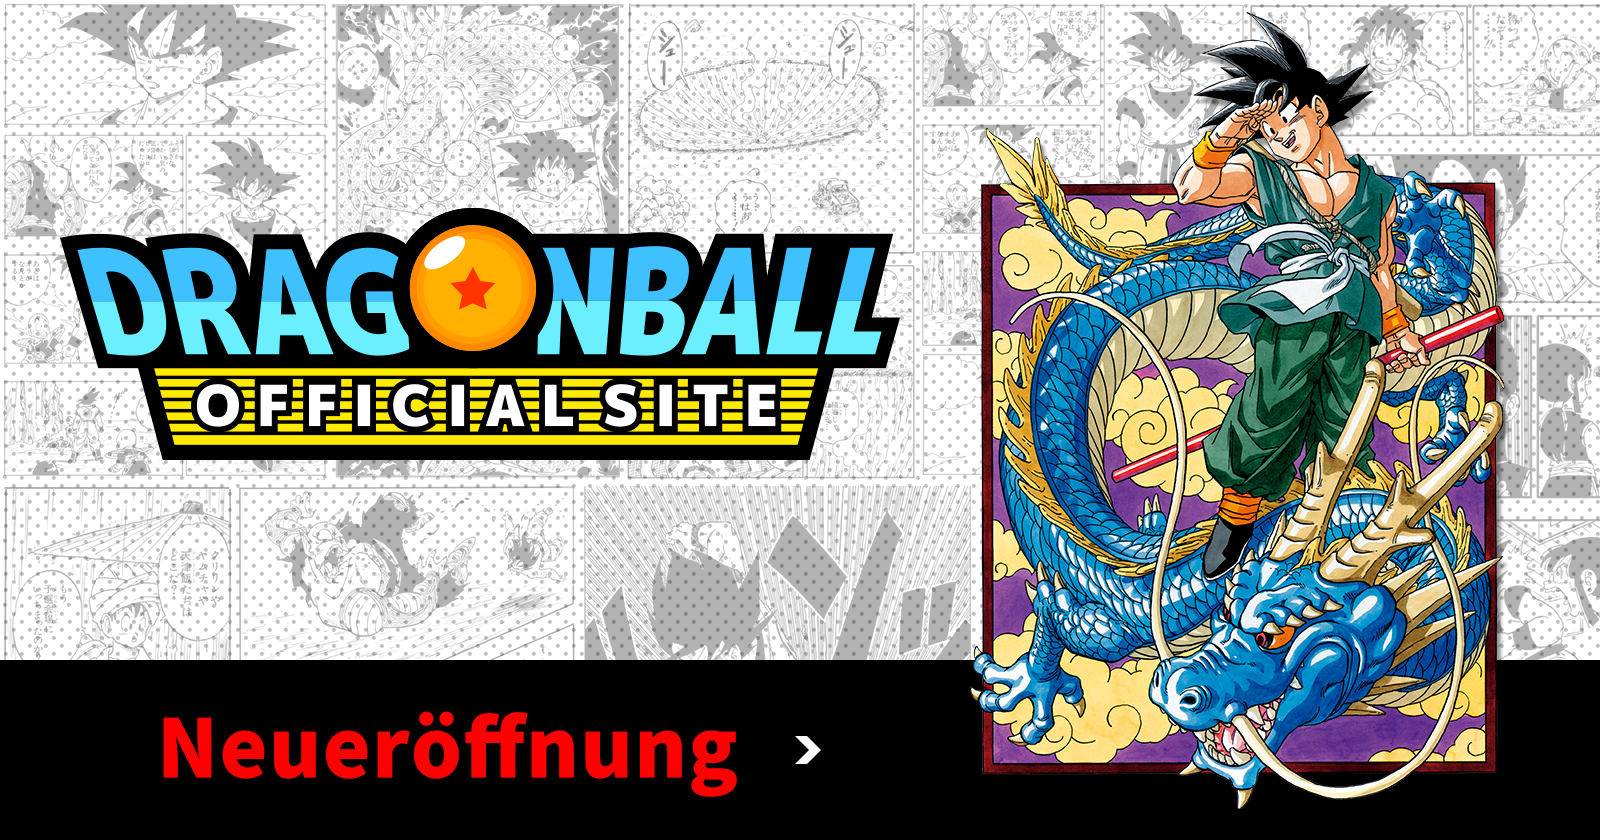 Die offizielle Seite von Dragon Ball wurde wieder geöffnet!